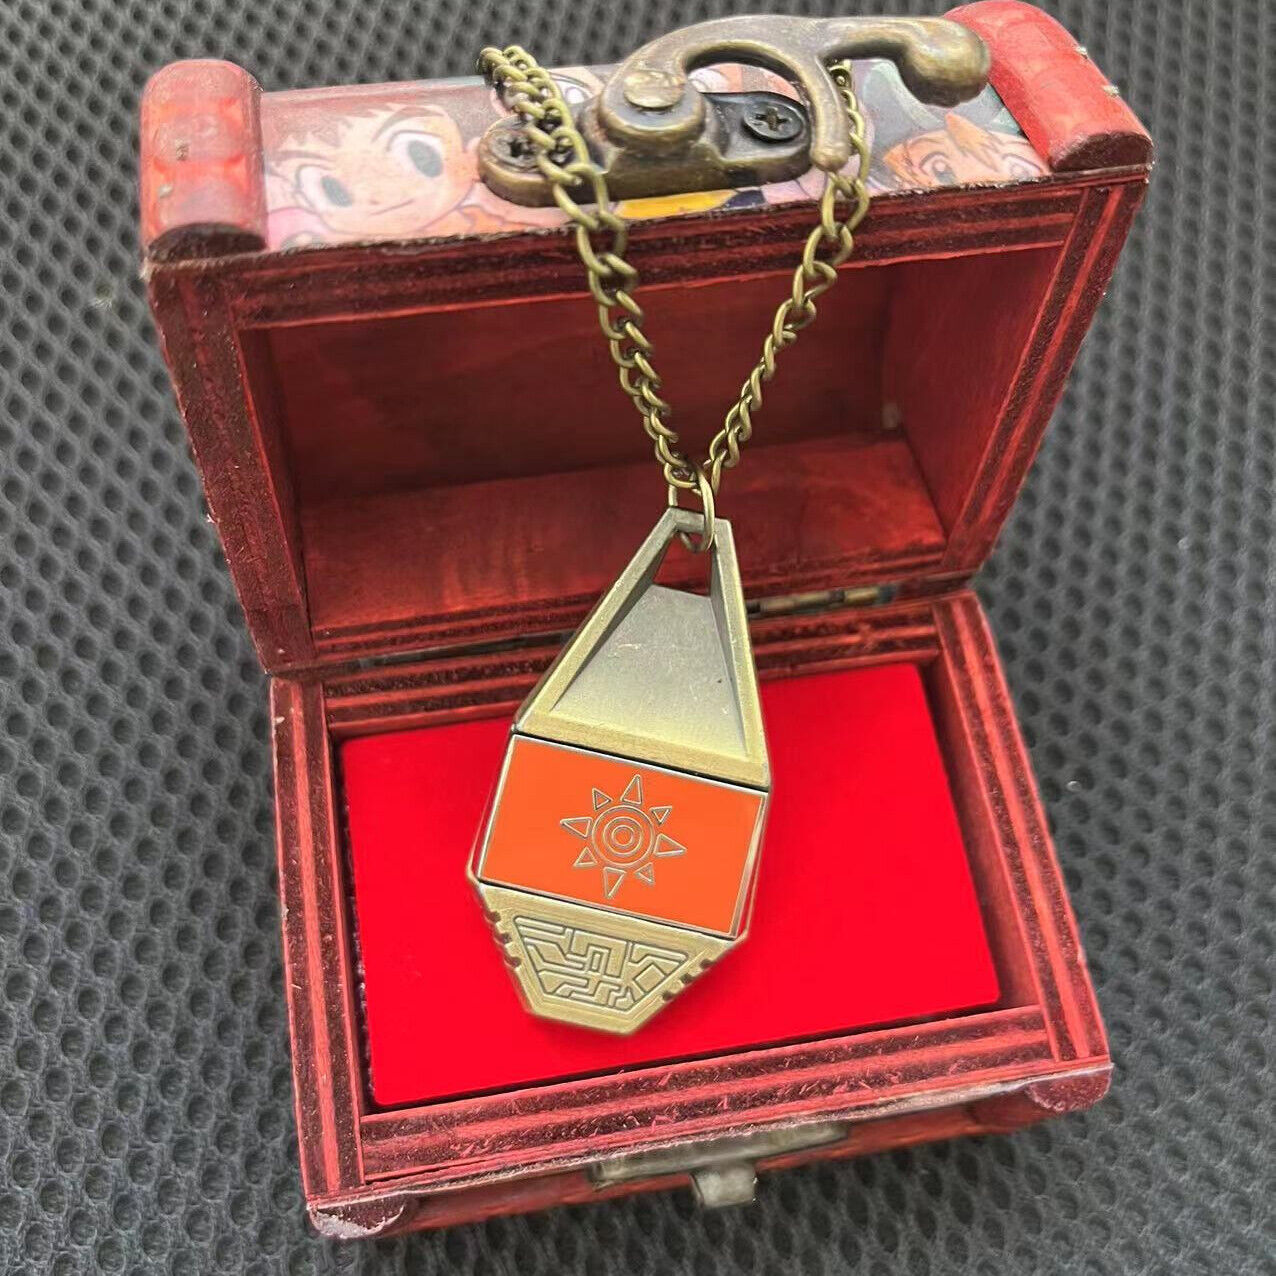 Digimon Adventure Tag & Crest Emblem Courage Necklace Pendant with Vintage Box